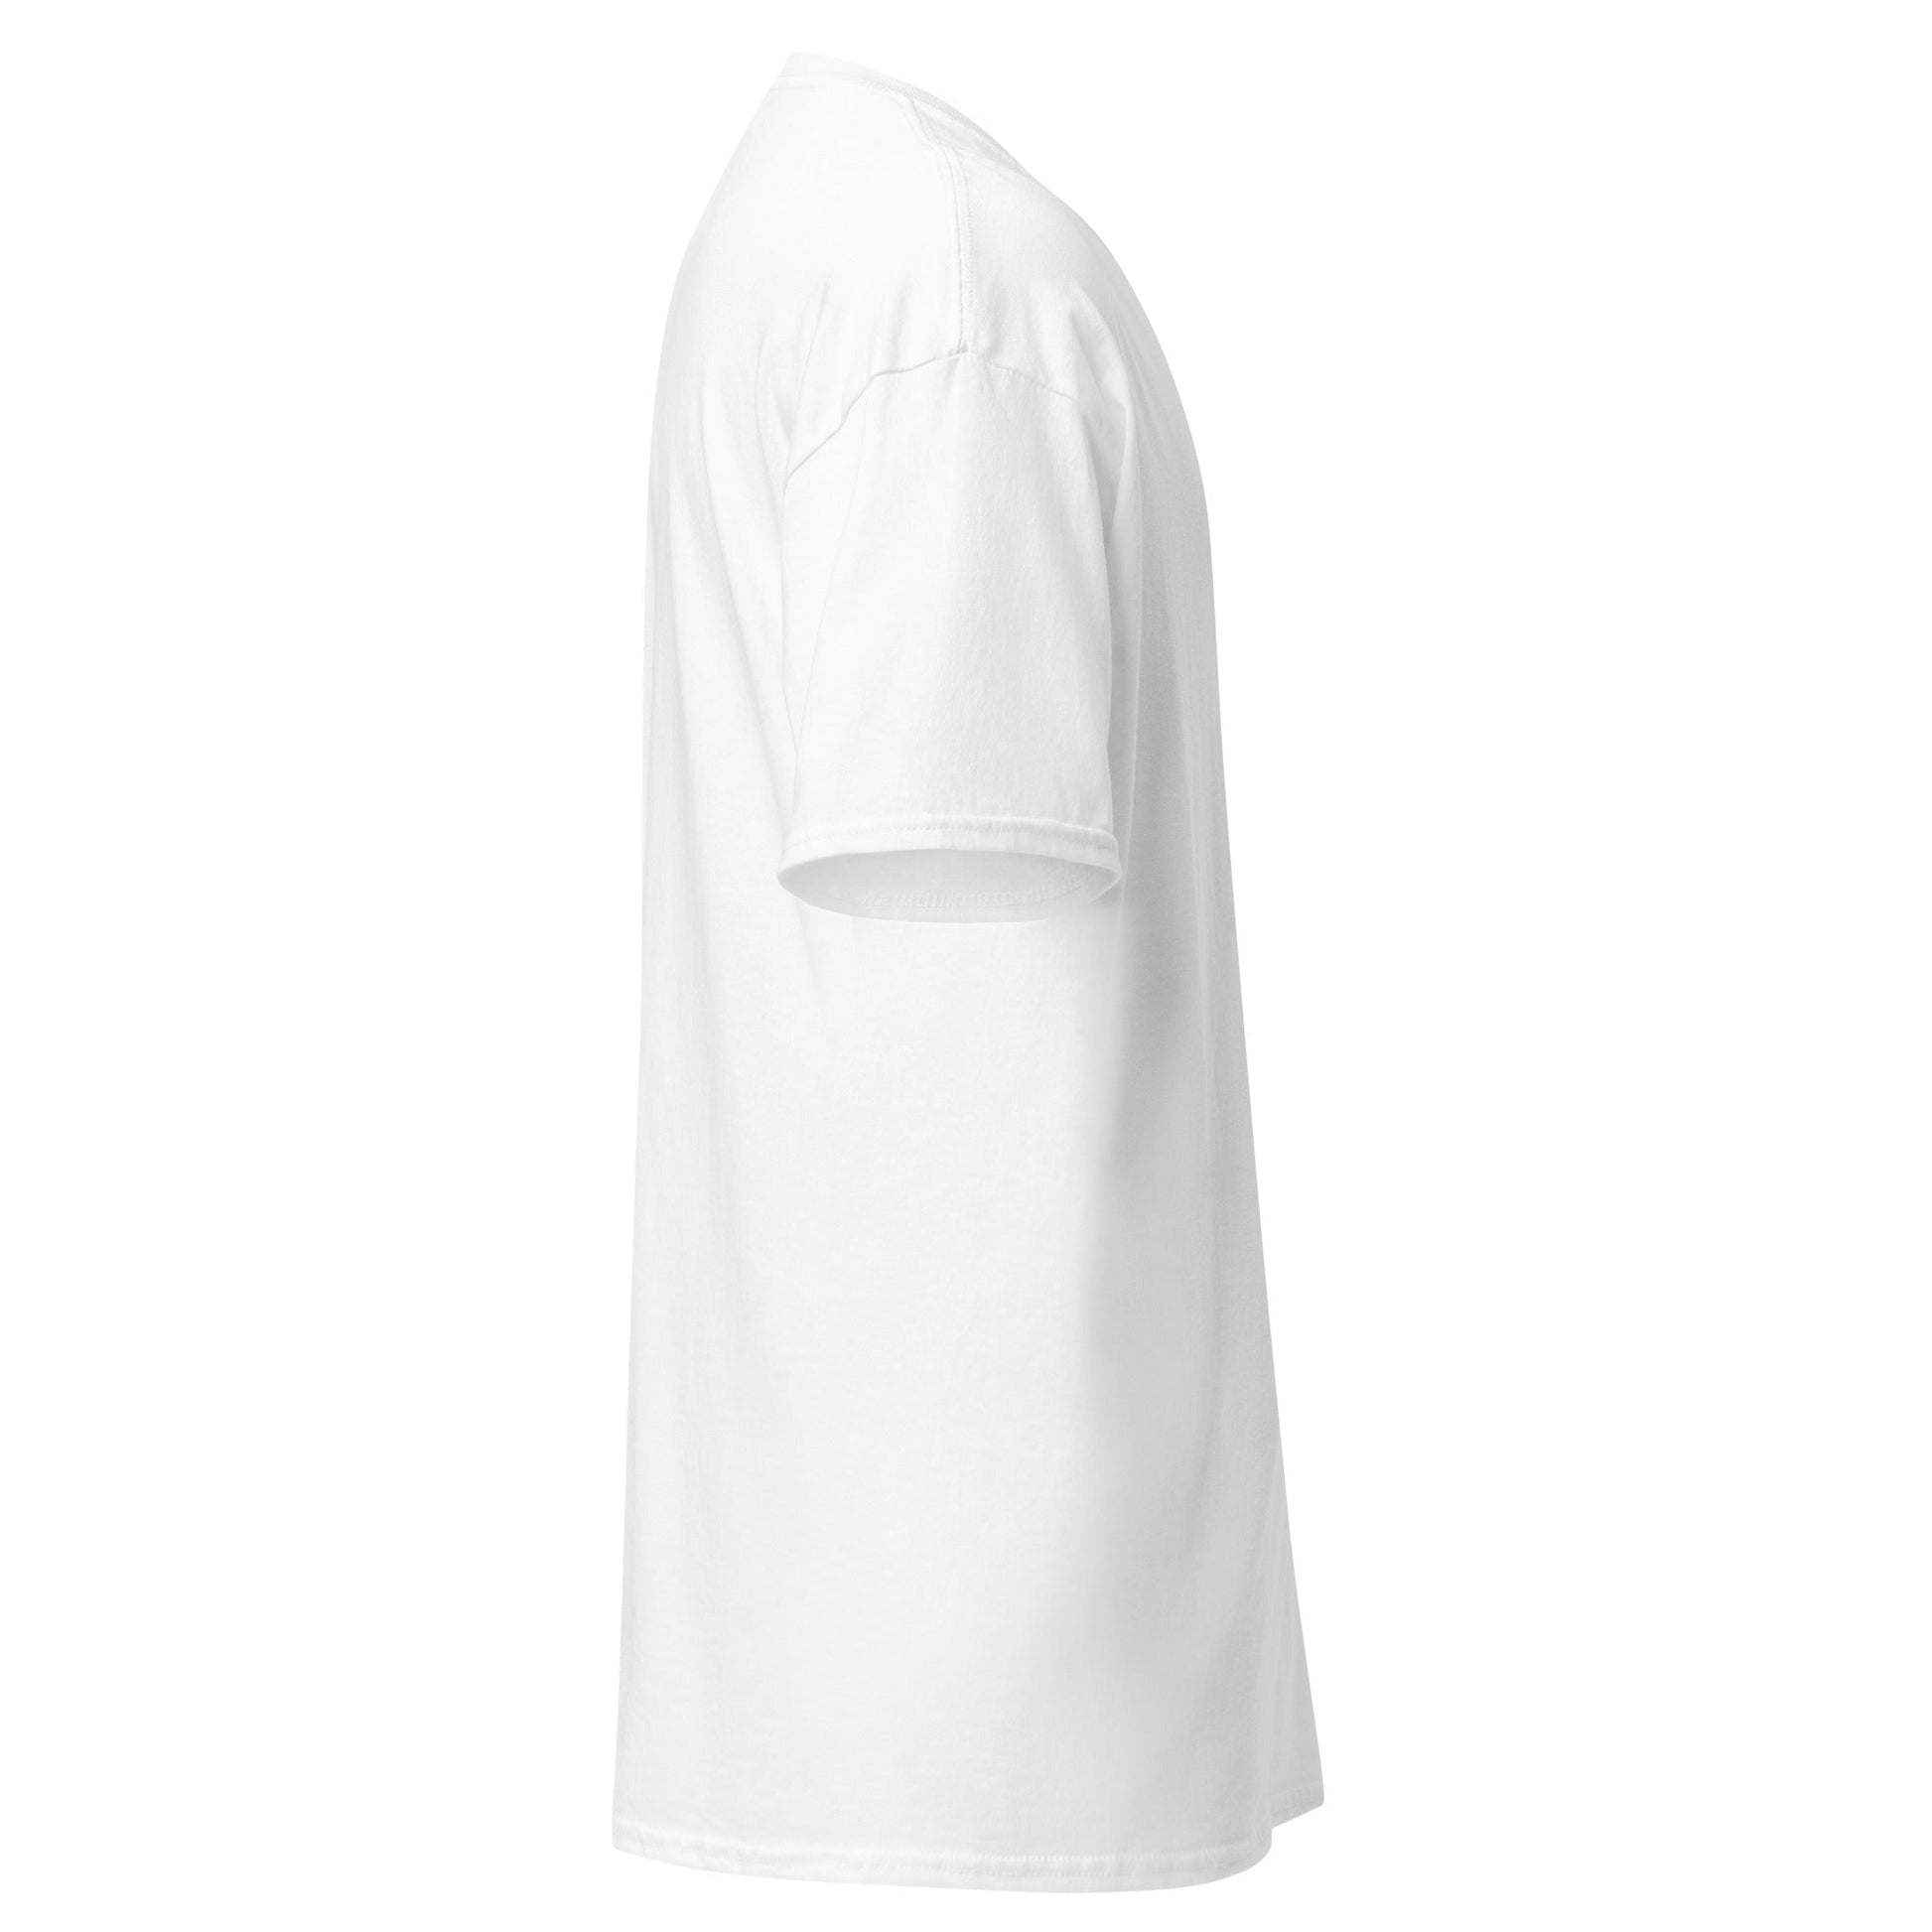 Camiseta Blanca de Modal paquete de 3 , una prenda de elegancia y comodidad en color blanco. Ideal para cualquier ocasión. envíos a Guatemala